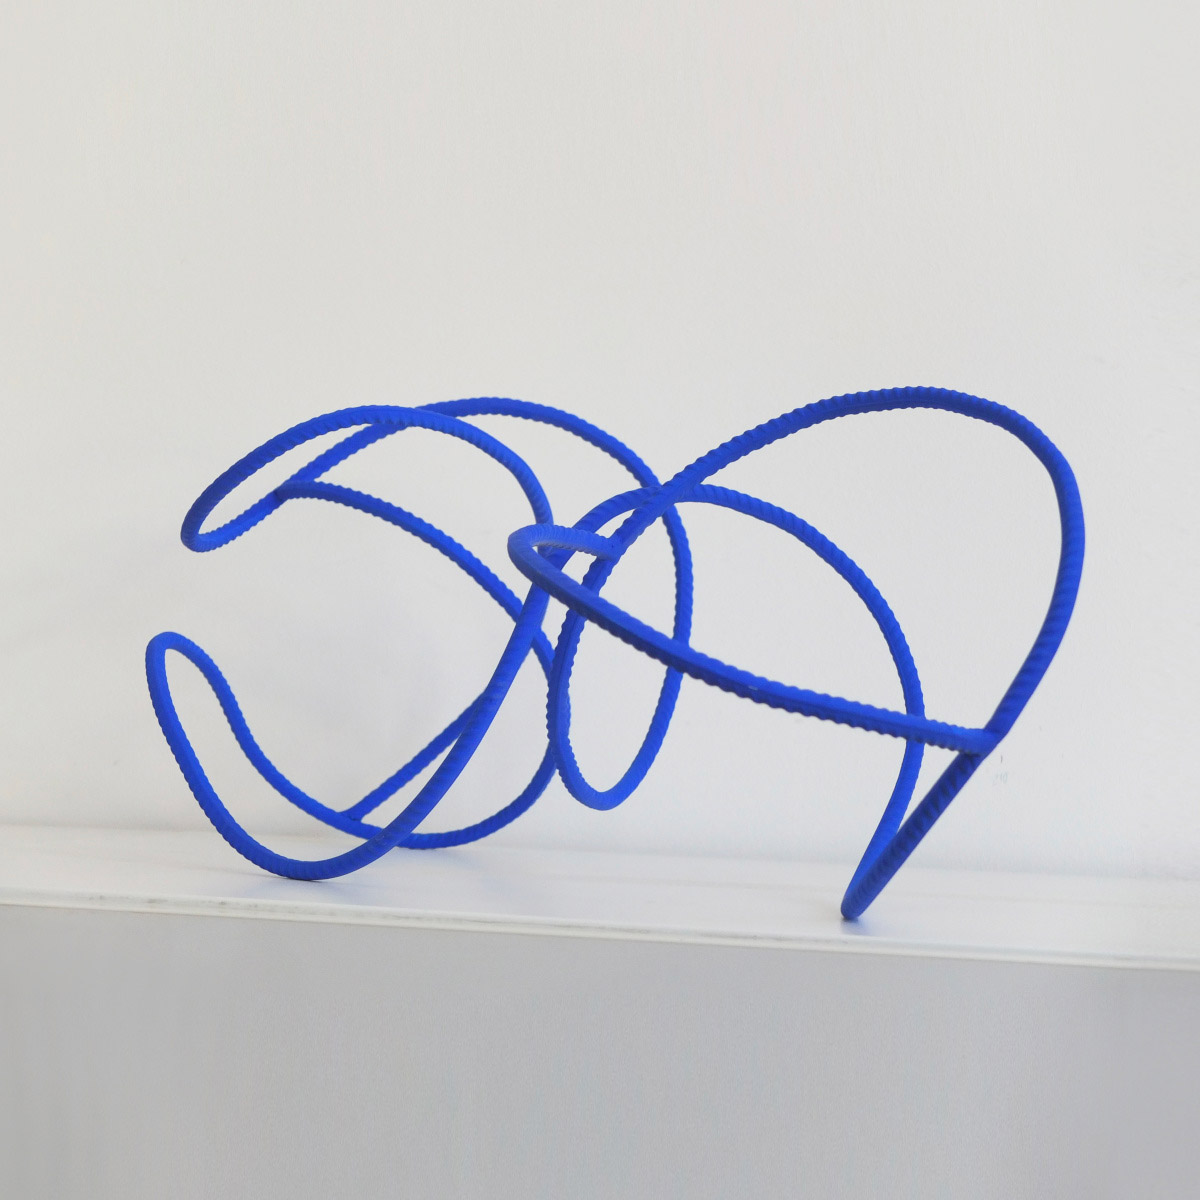 Alex Palenski art contemporain sculpture fer à béton bleu klein paris